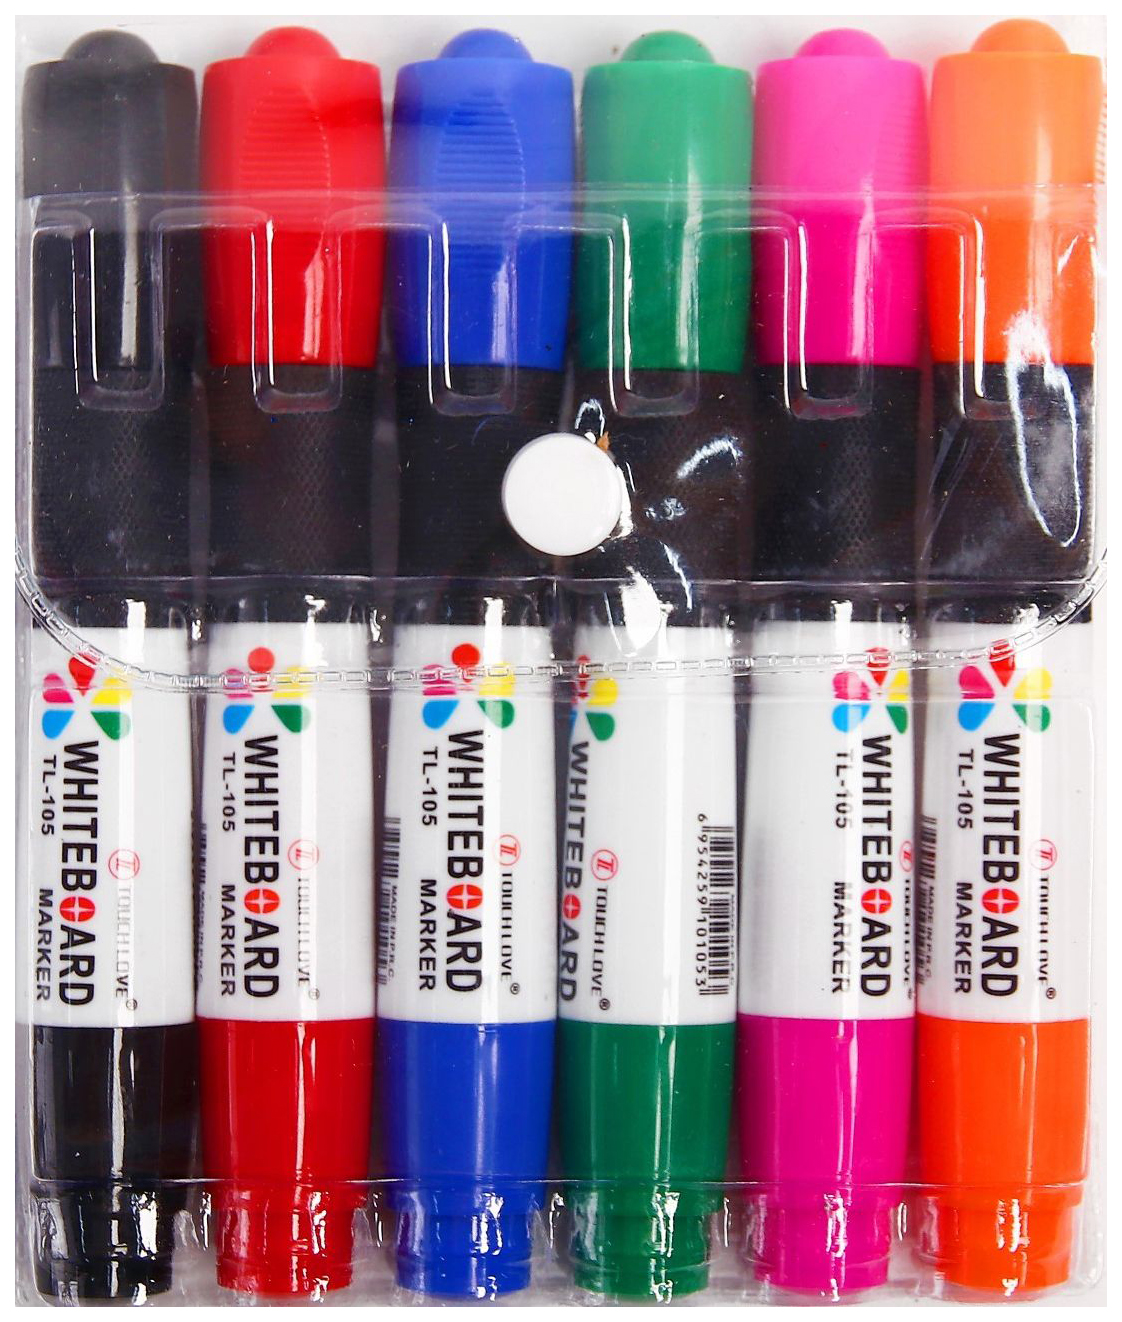 Дешевые маркеры. Цветные фломастеры для рисования. Профессиональные маркеры. Разноцветные маркеры. Набор маркеров.